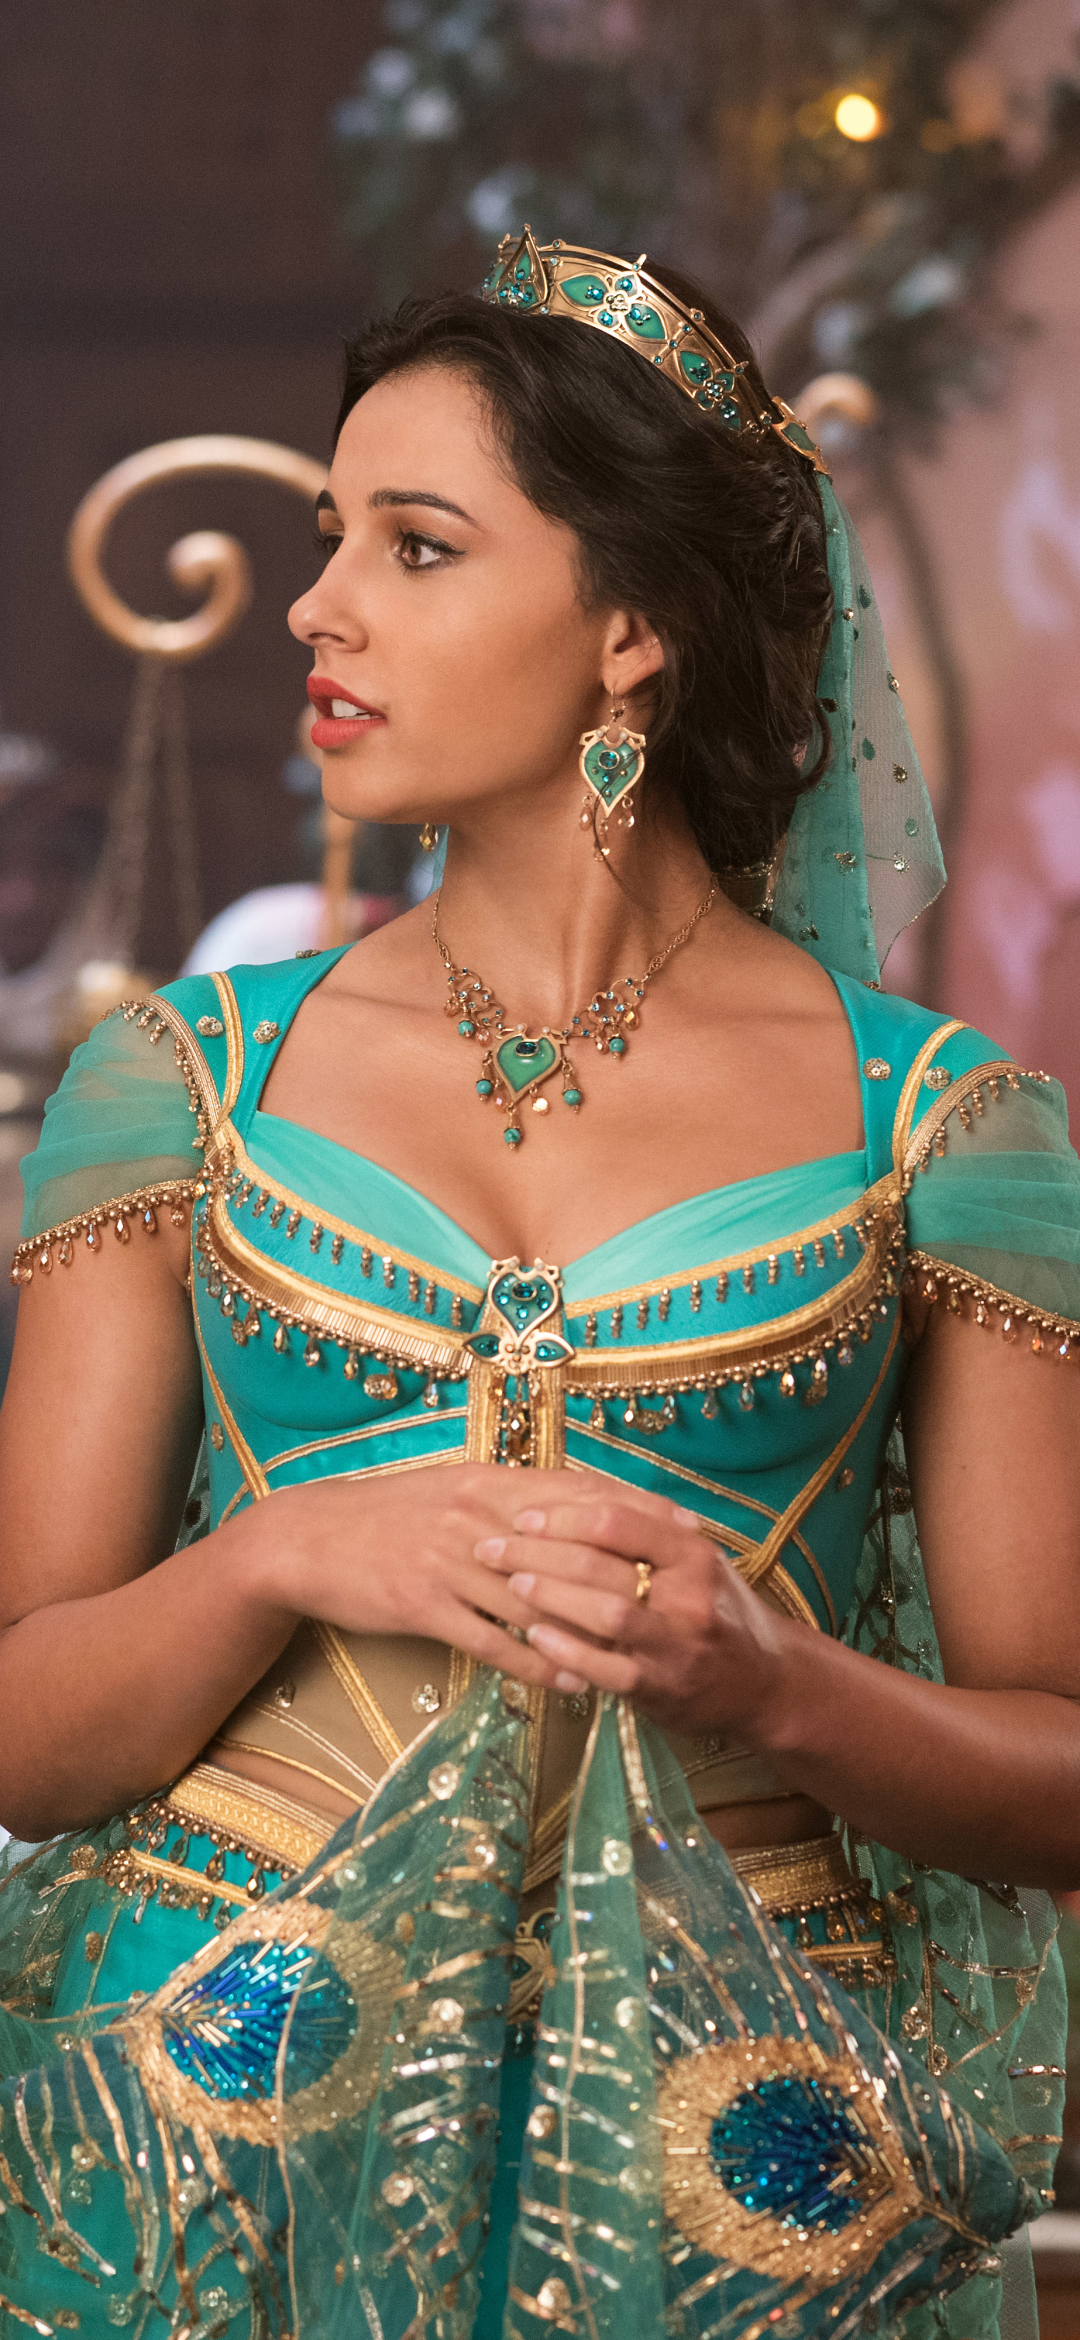 naomi scott, movie, aladdin (2019), princess jasmine Full HD